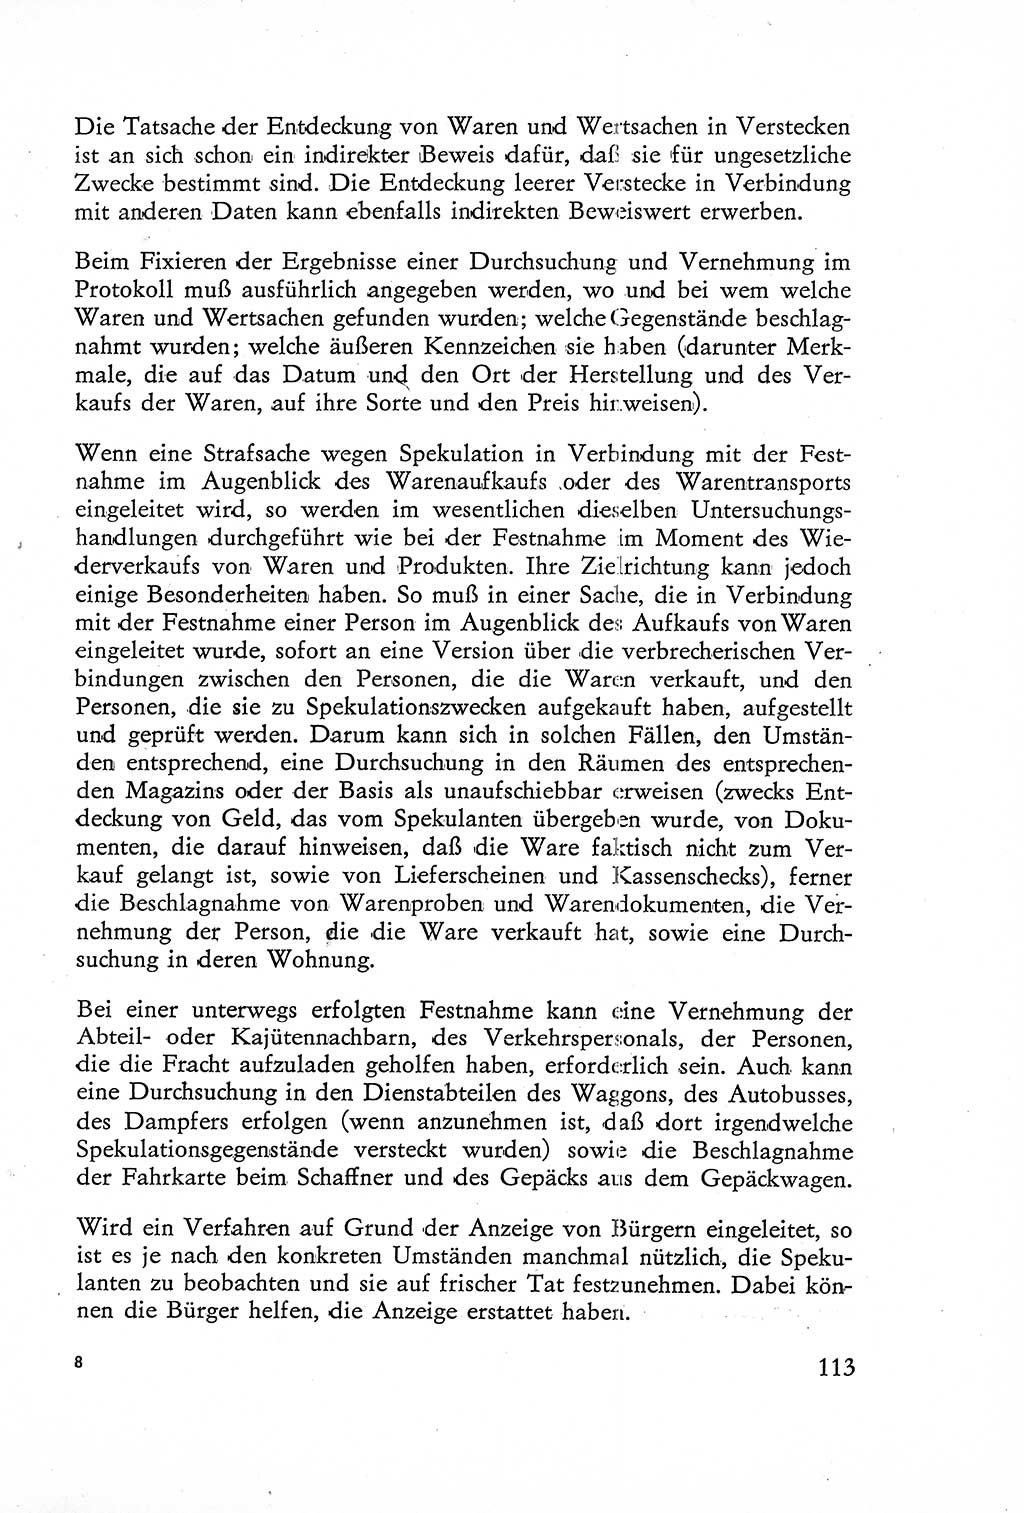 Die Untersuchung einzelner Verbrechensarten [Deutsche Demokratische Republik (DDR)] 1960, Seite 113 (Unters. Verbr.-Art. DDR 1960, S. 113)